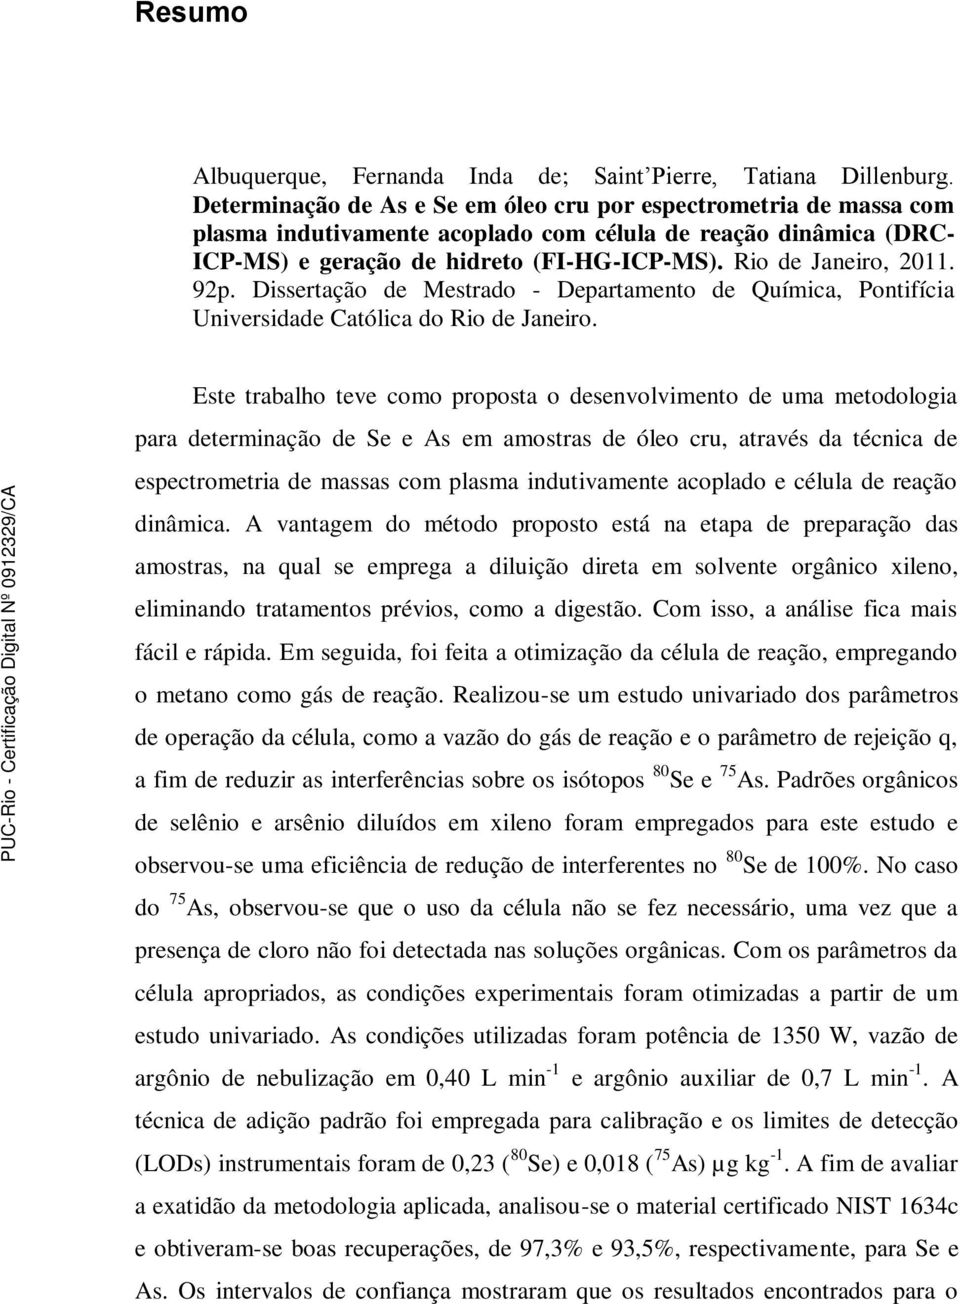 92p. Dissertação de Mestrado - Departamento de Química, Pontifícia Universidade Católica do Rio de Janeiro.